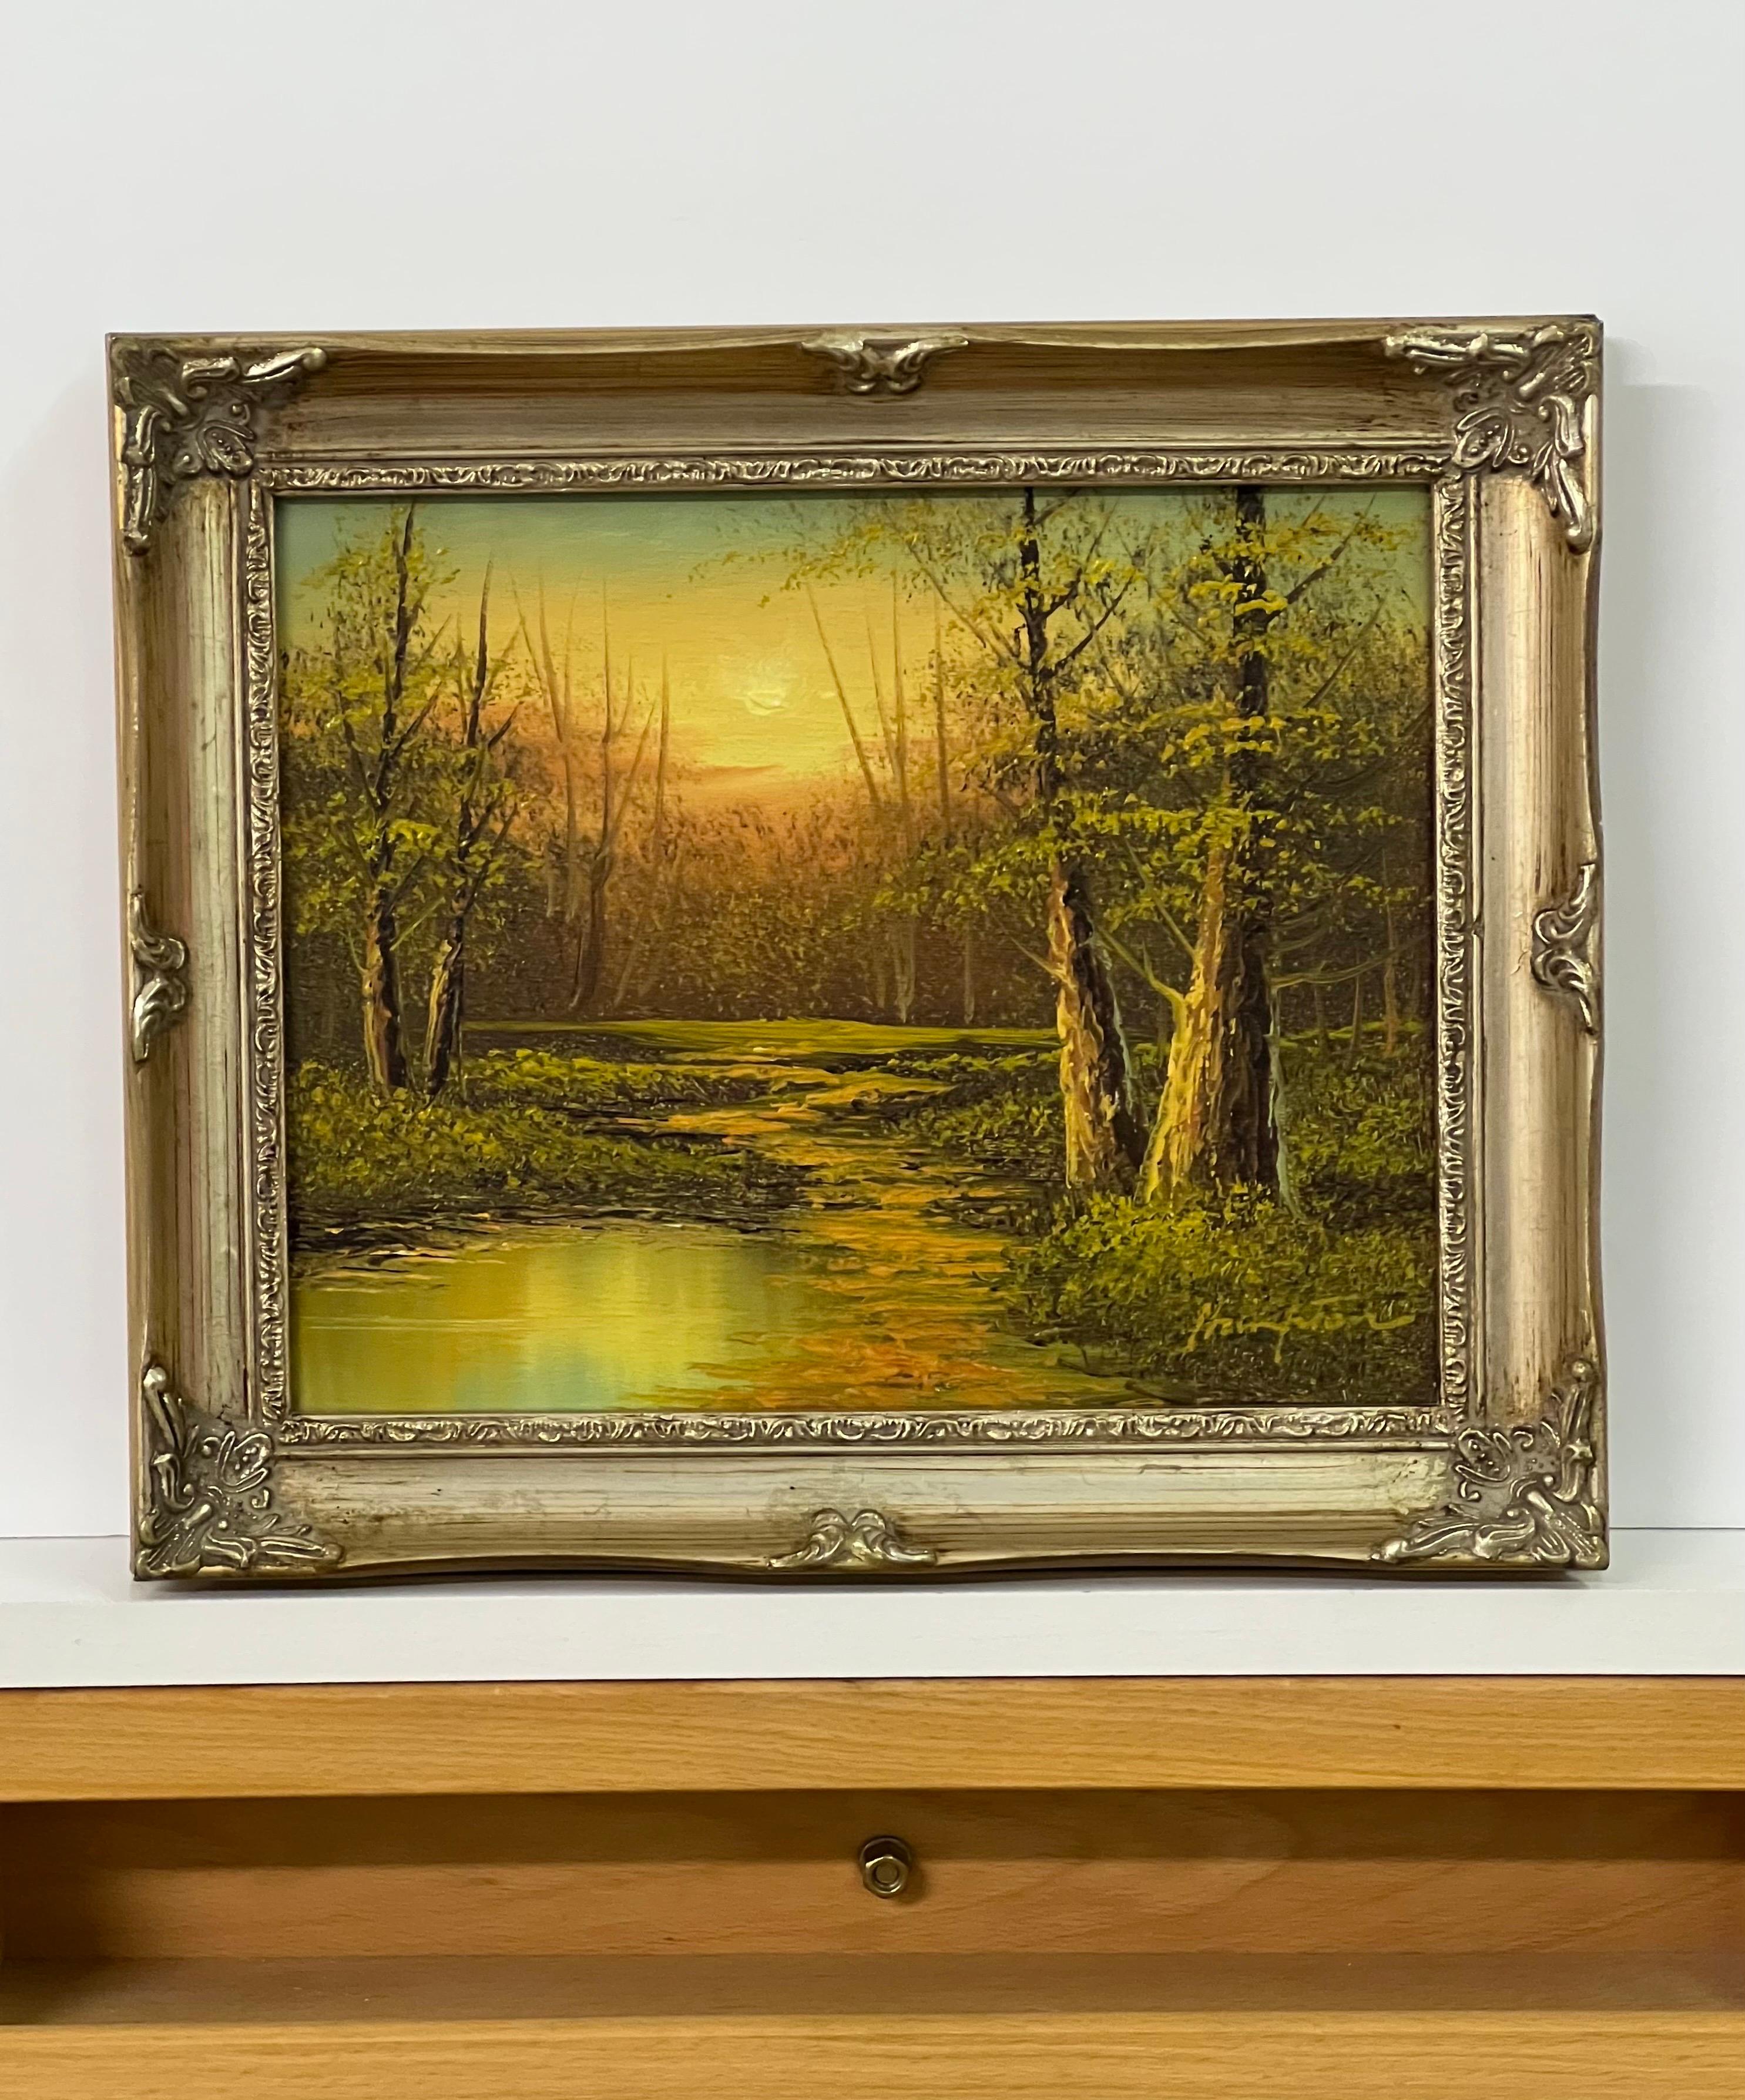 Vintage Ölgemälde von Fluss Sonnenuntergang in den Wäldern der englischen Landschaft von 20th Century British Artist. Die Bemalung in warmen Orange- und Grüntönen schafft eine einzigartige Atmosphäre. 

Kunst misst 10 x 8 Zoll 
Rahmen misst 12 x 10